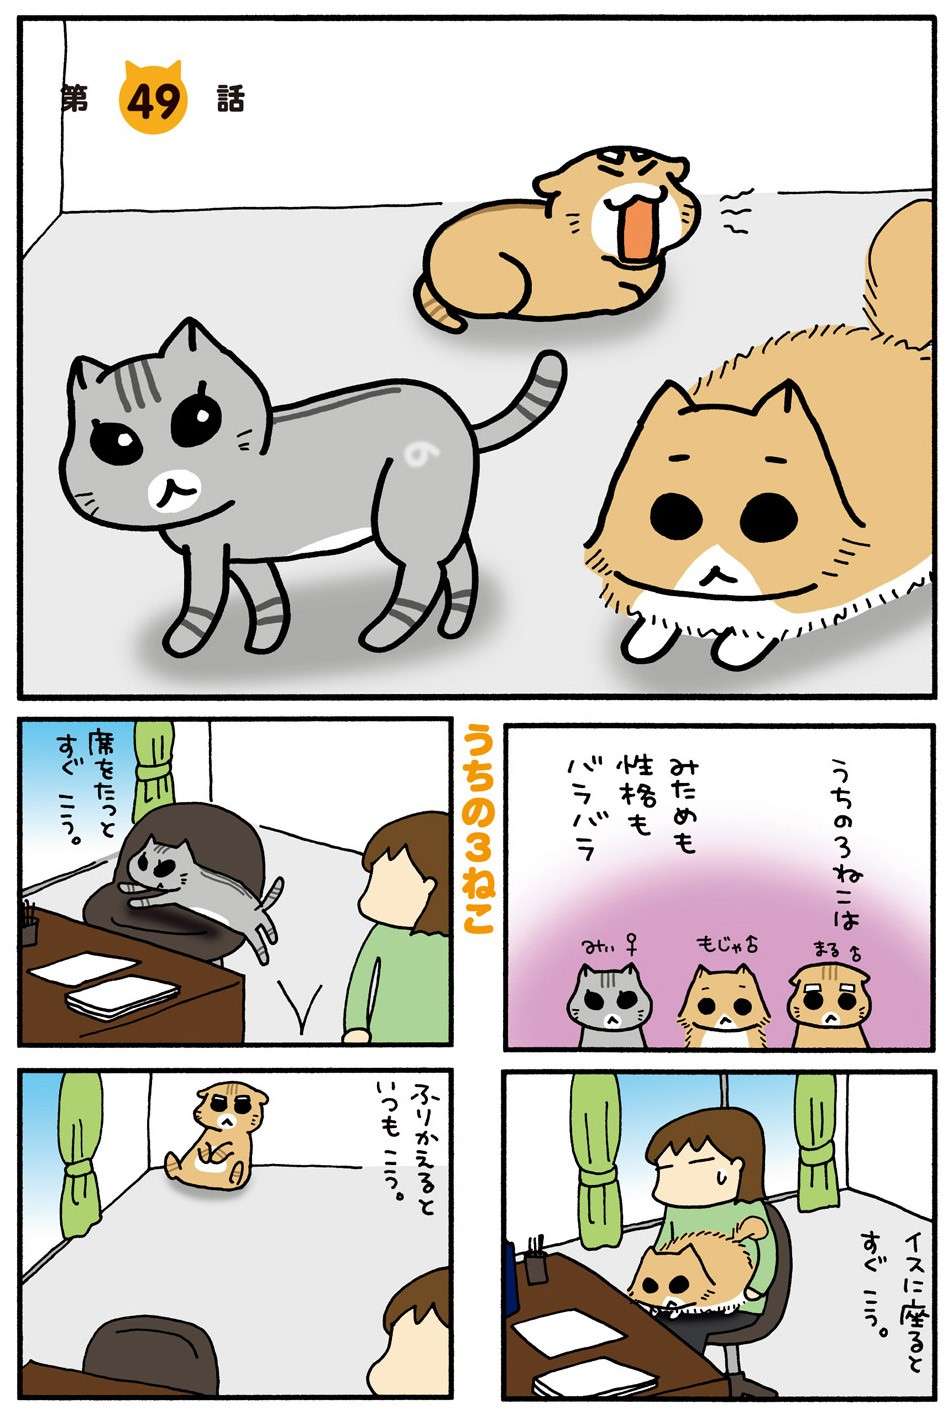 猫vs犬の戦争...！ カーテンの向こうに猫を発見した犬がちょっかいを出して／うちの3ねこ 3 uchinosanneko3_009.jpg